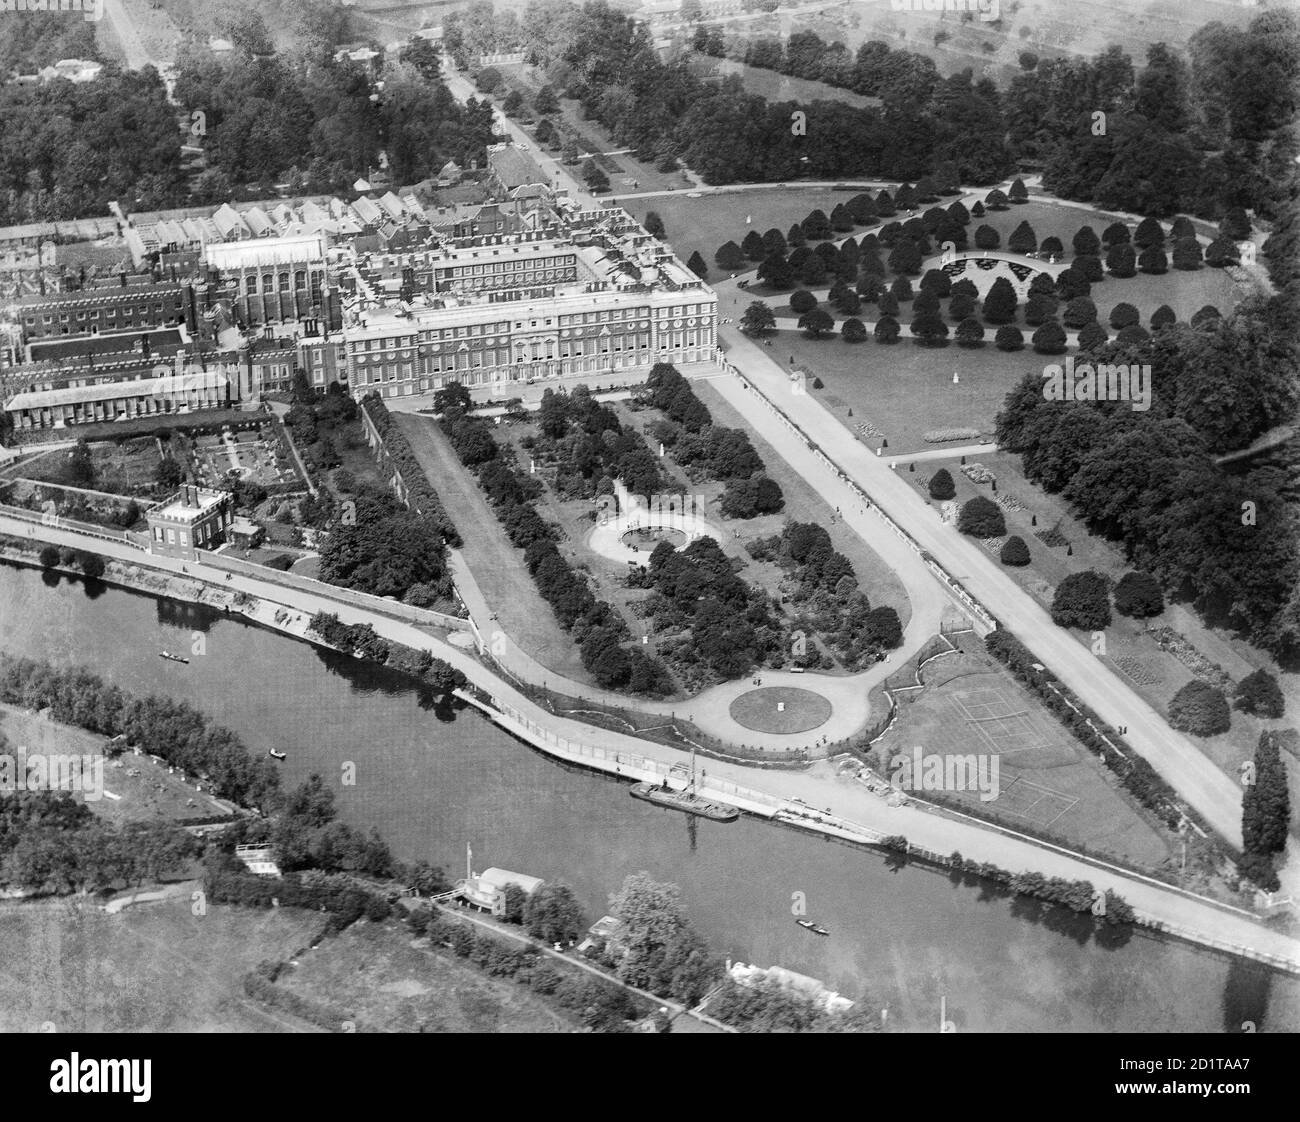 HAMPTON COURT, Richmond-upon-Thames, Londres. Vista aérea del Palacio de Hampton Court, los jardines y el río Támesis. Fotografiado en 1920. Colección Aerofilms (ver Enlaces). Foto de stock